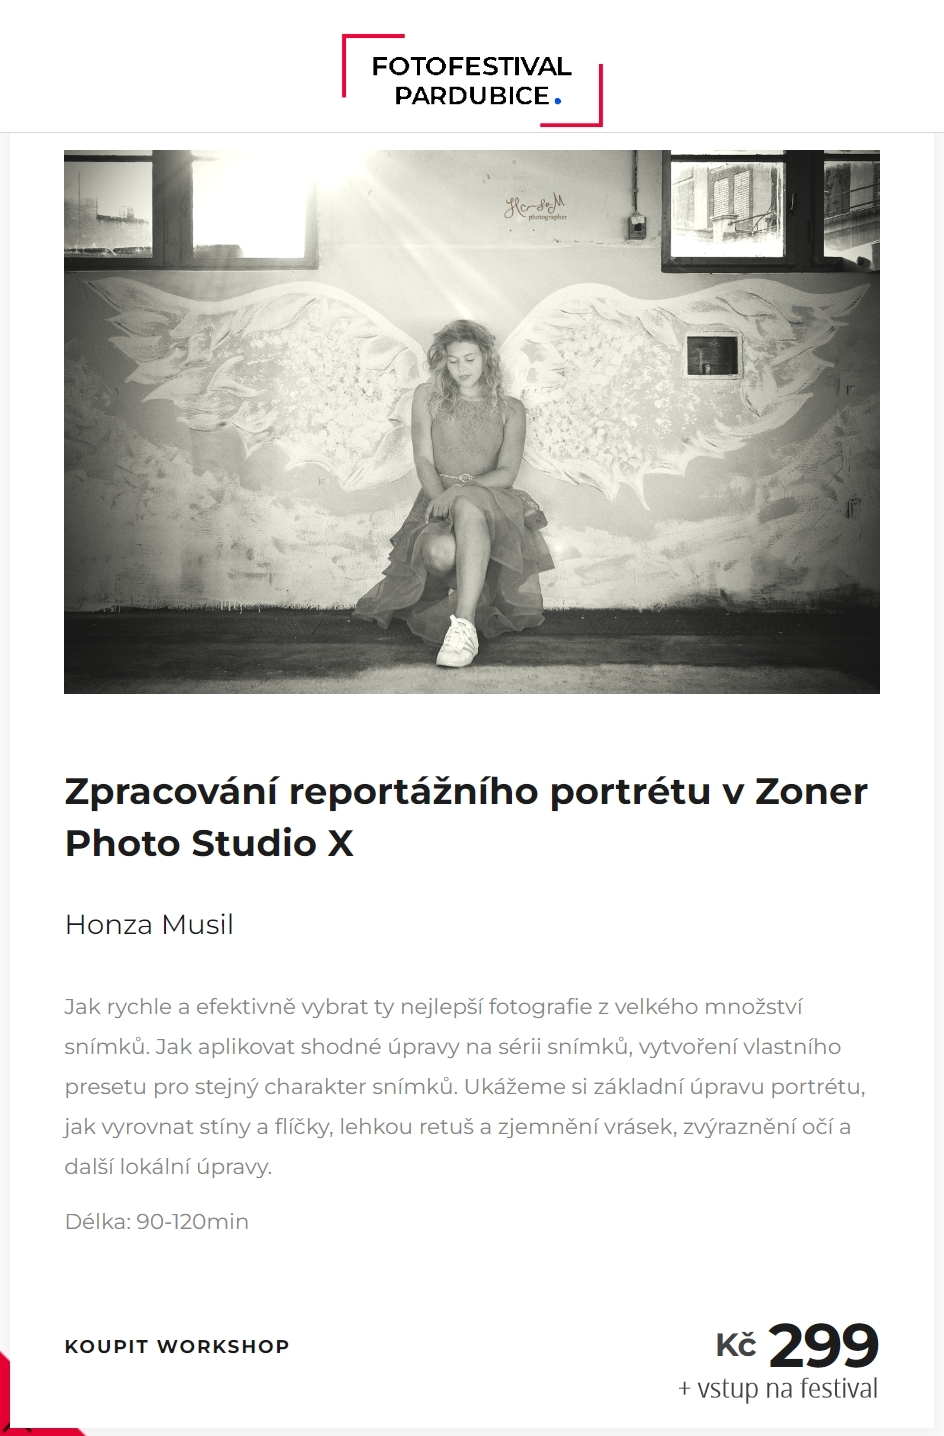 1683842400 - Zpracování reportážního portrétu v Zoner Photo Studio X -  Fotofestival Pardubice